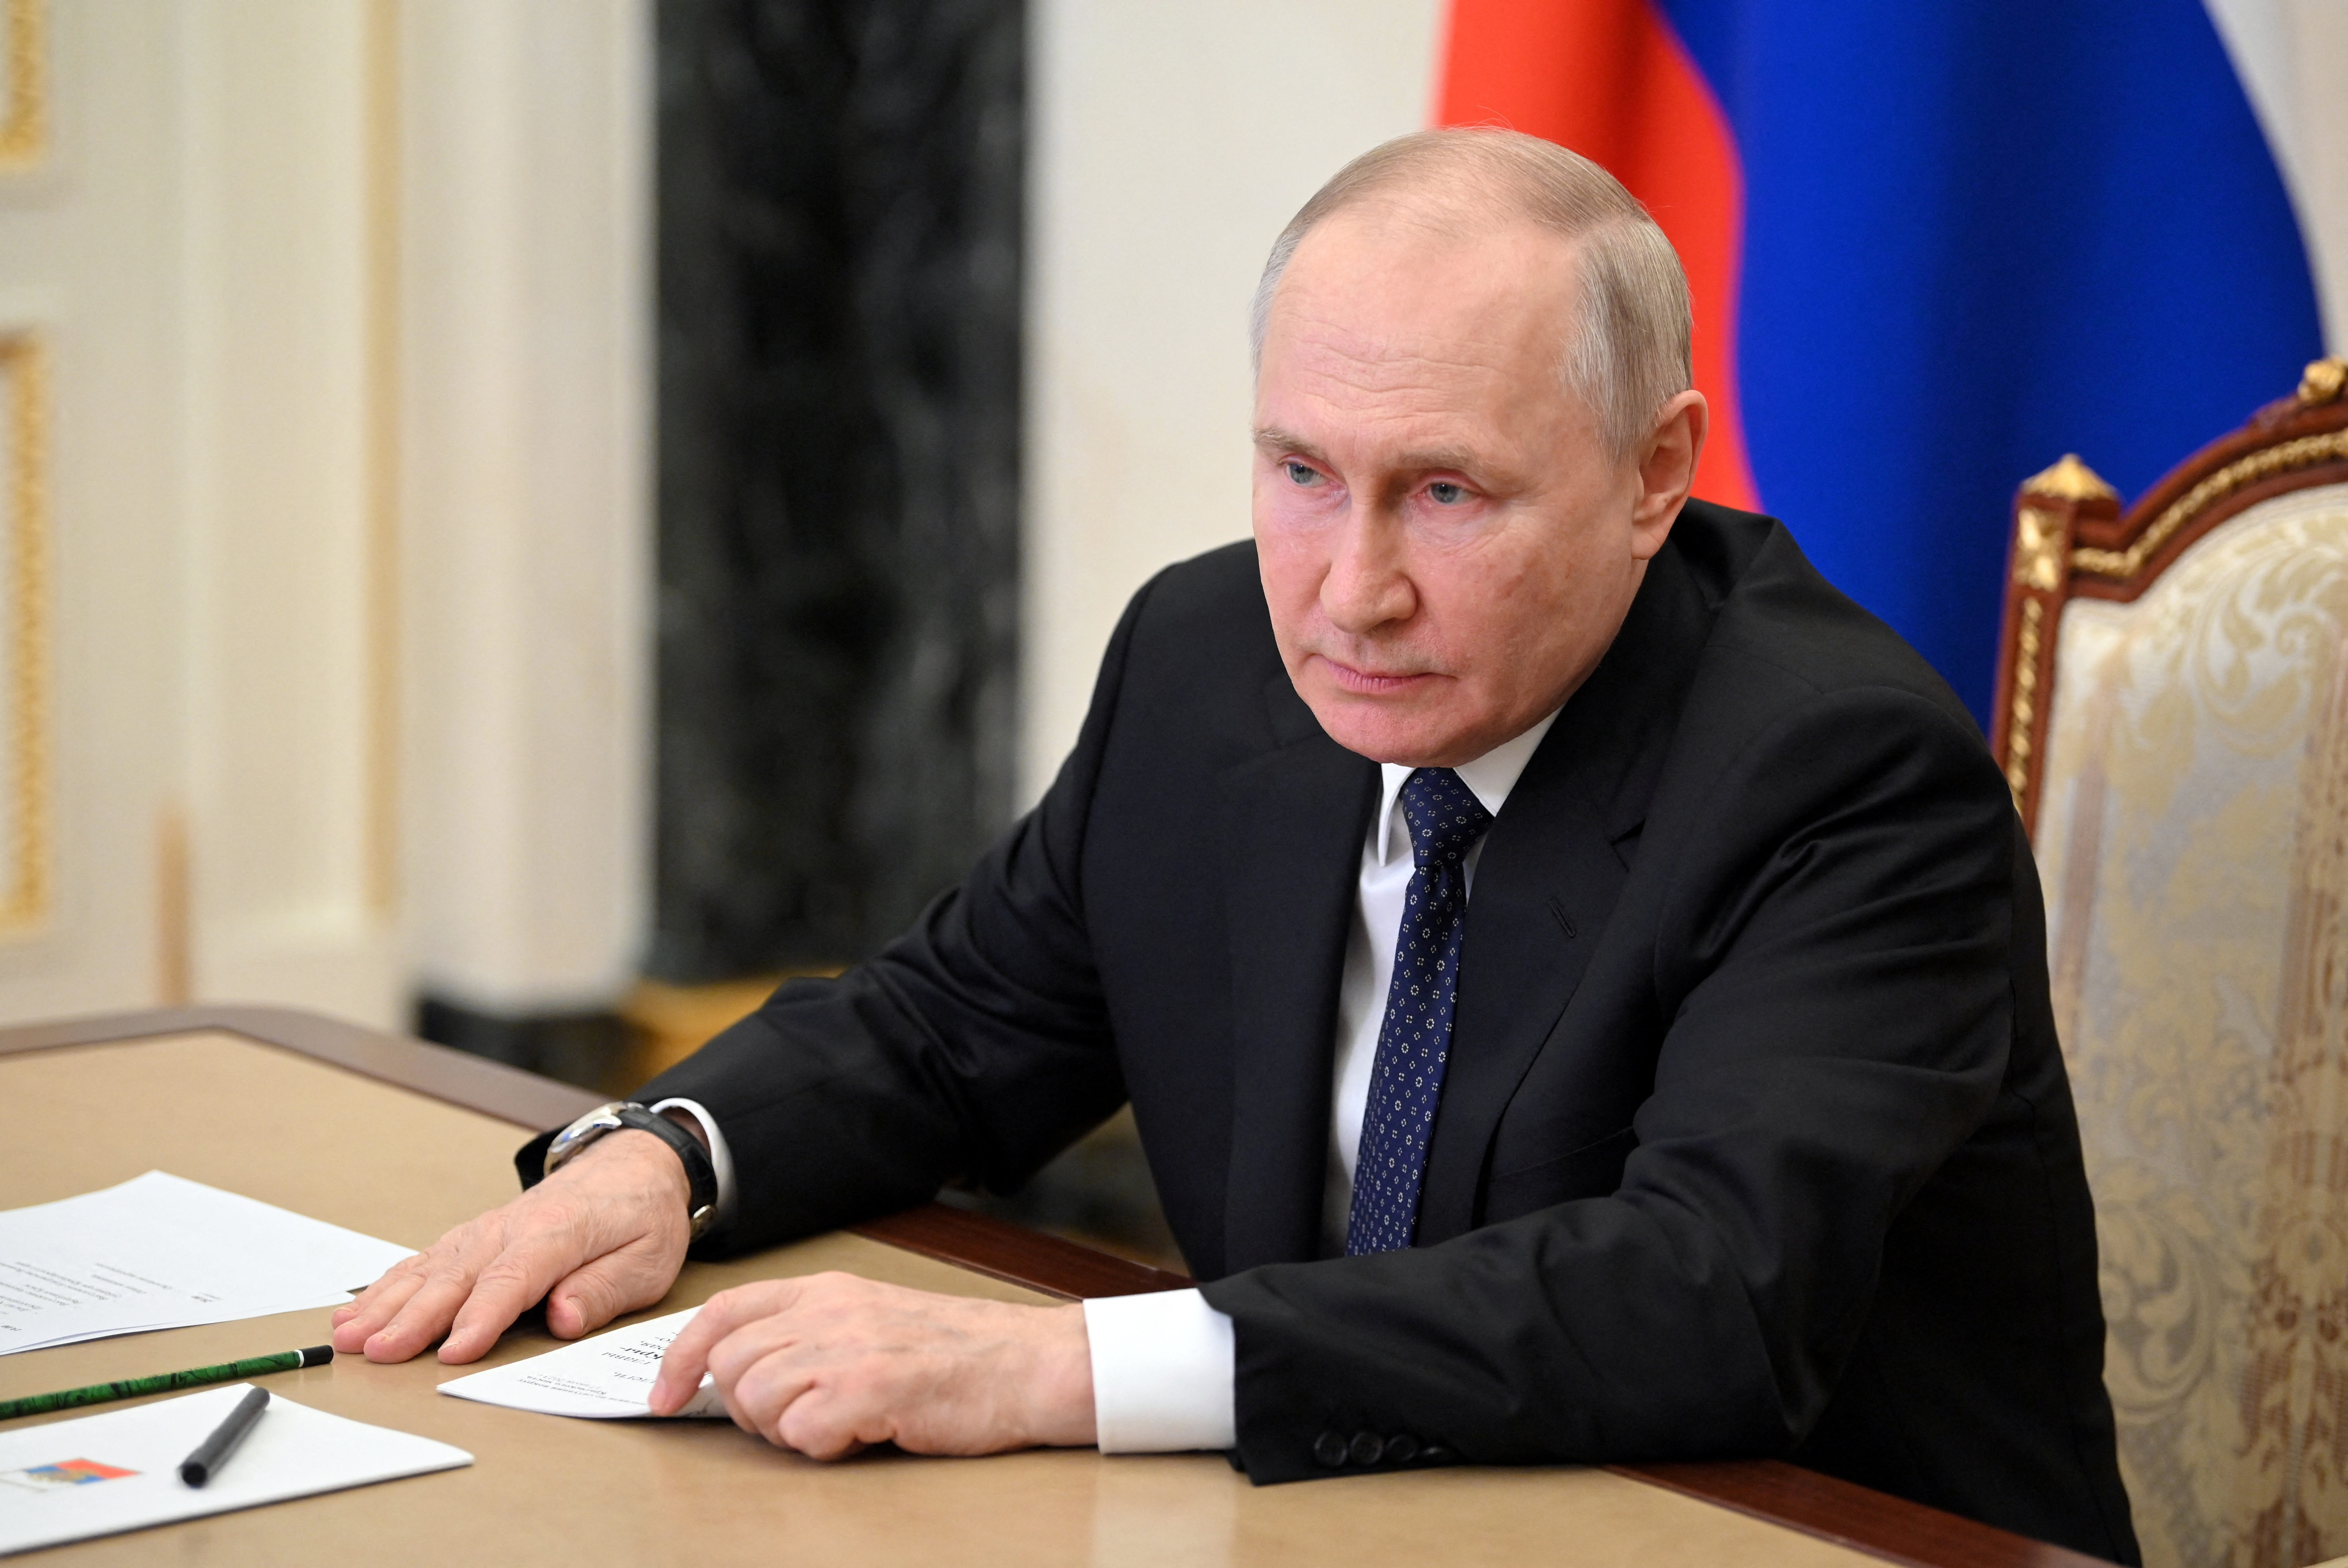 El presidente ruso Putin asiste a una reunión en Moscú